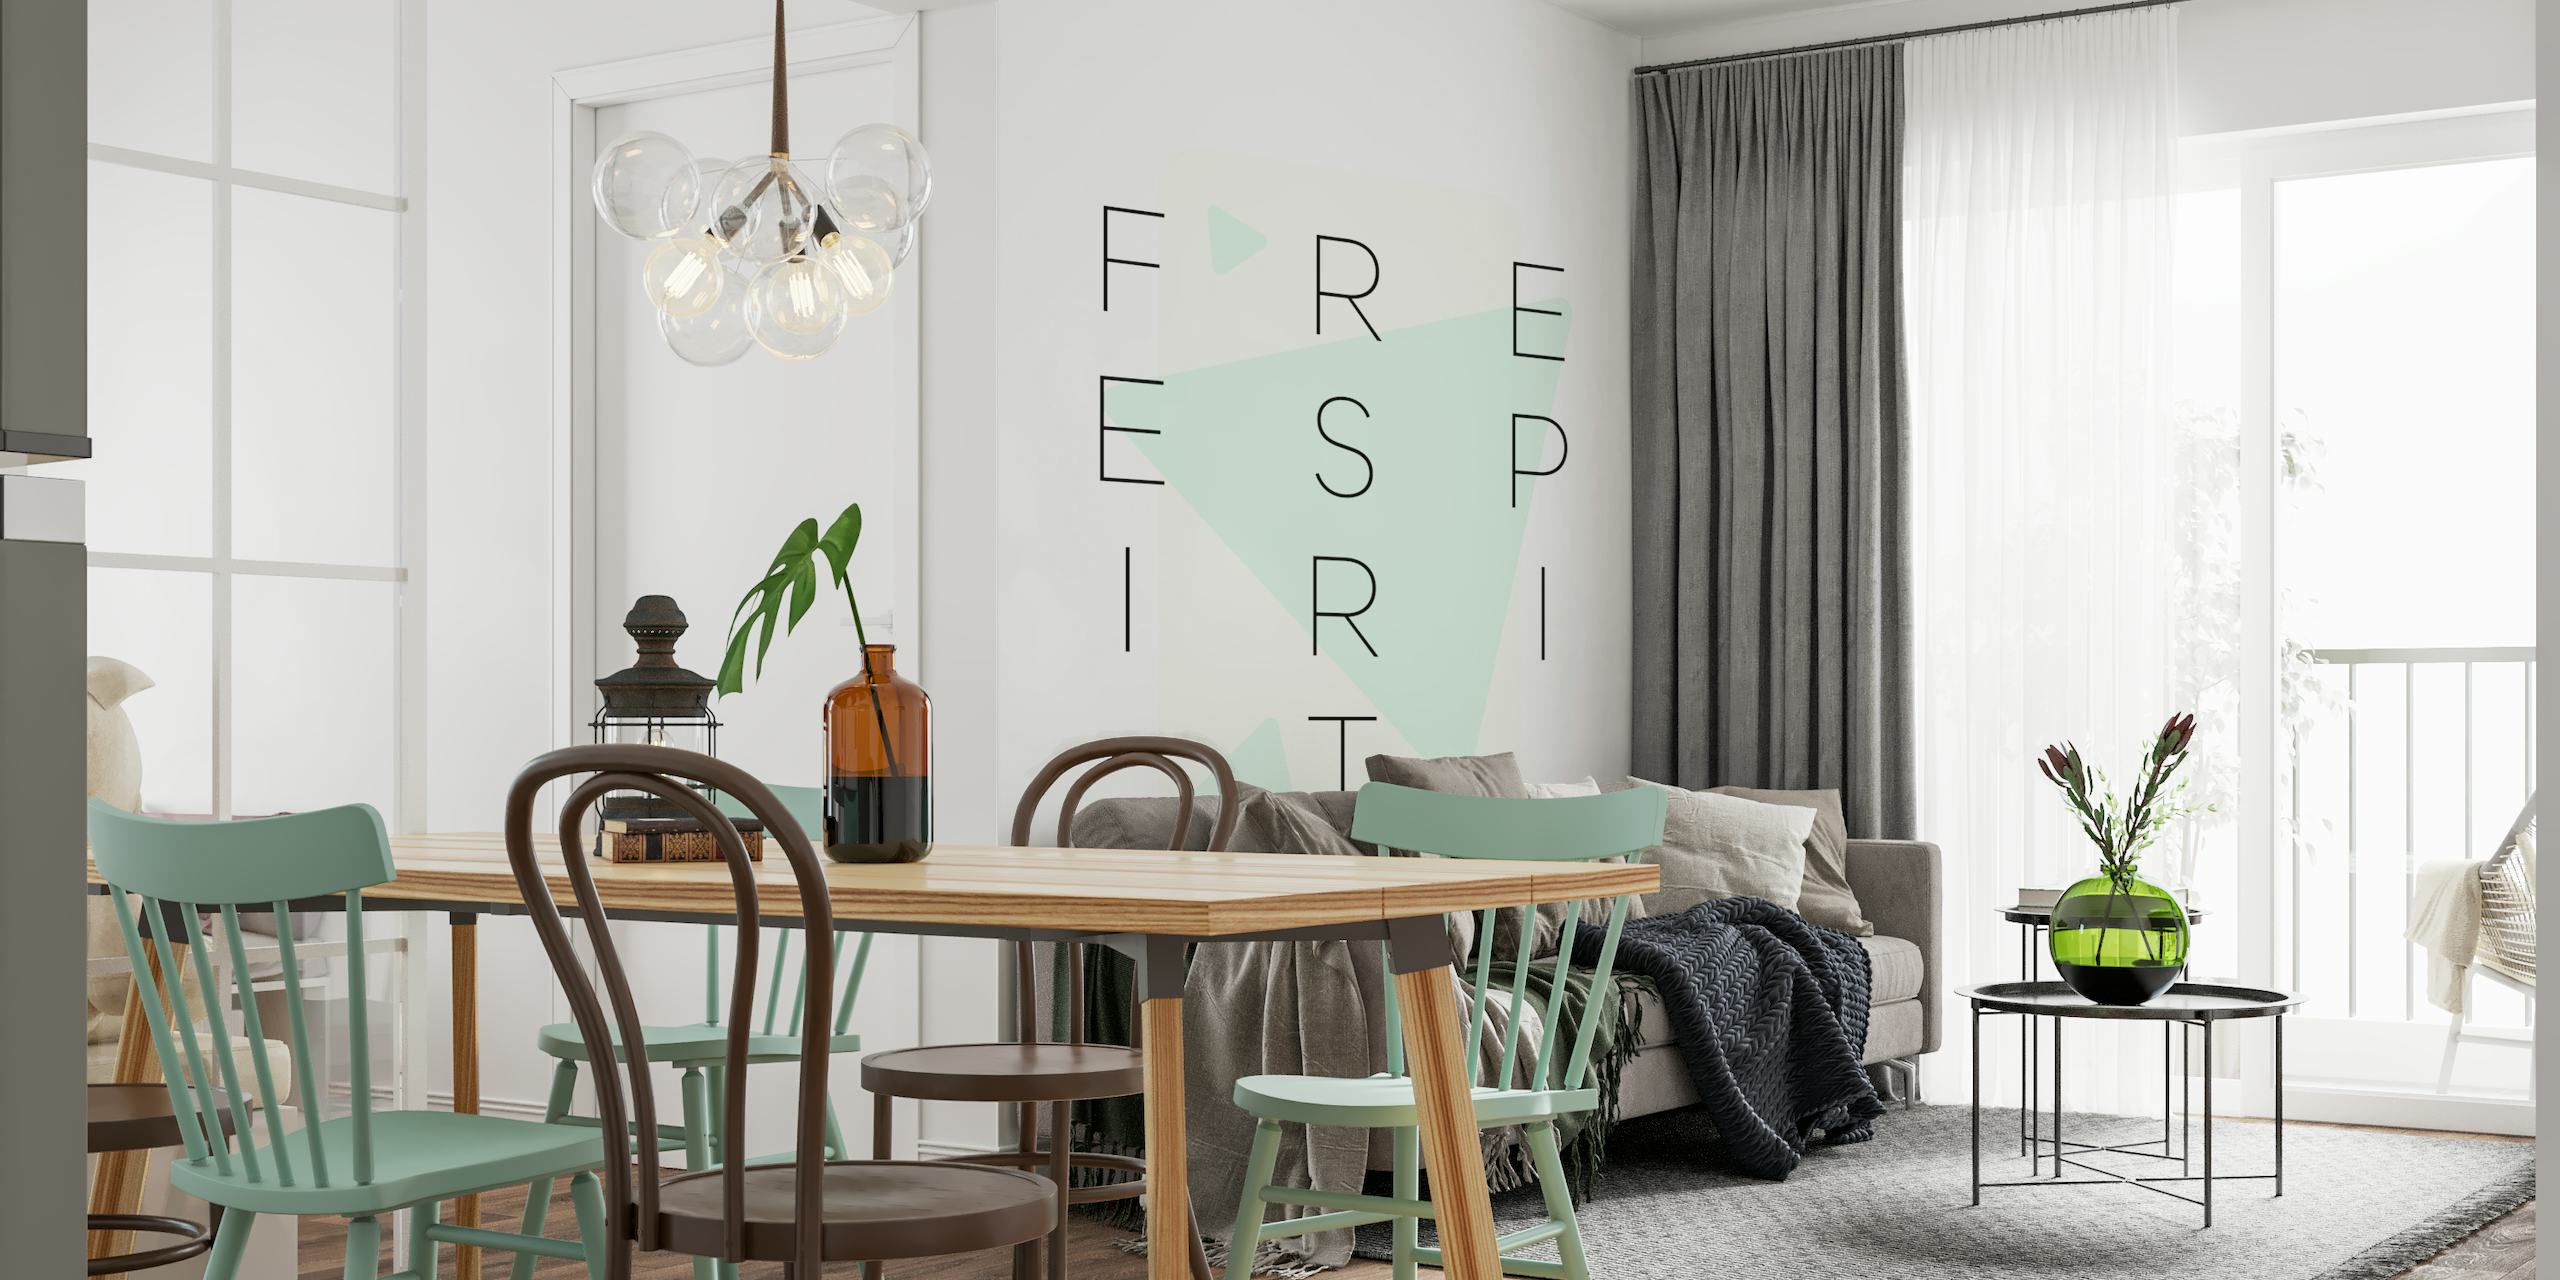 Free spirit - turquoise wallpaper